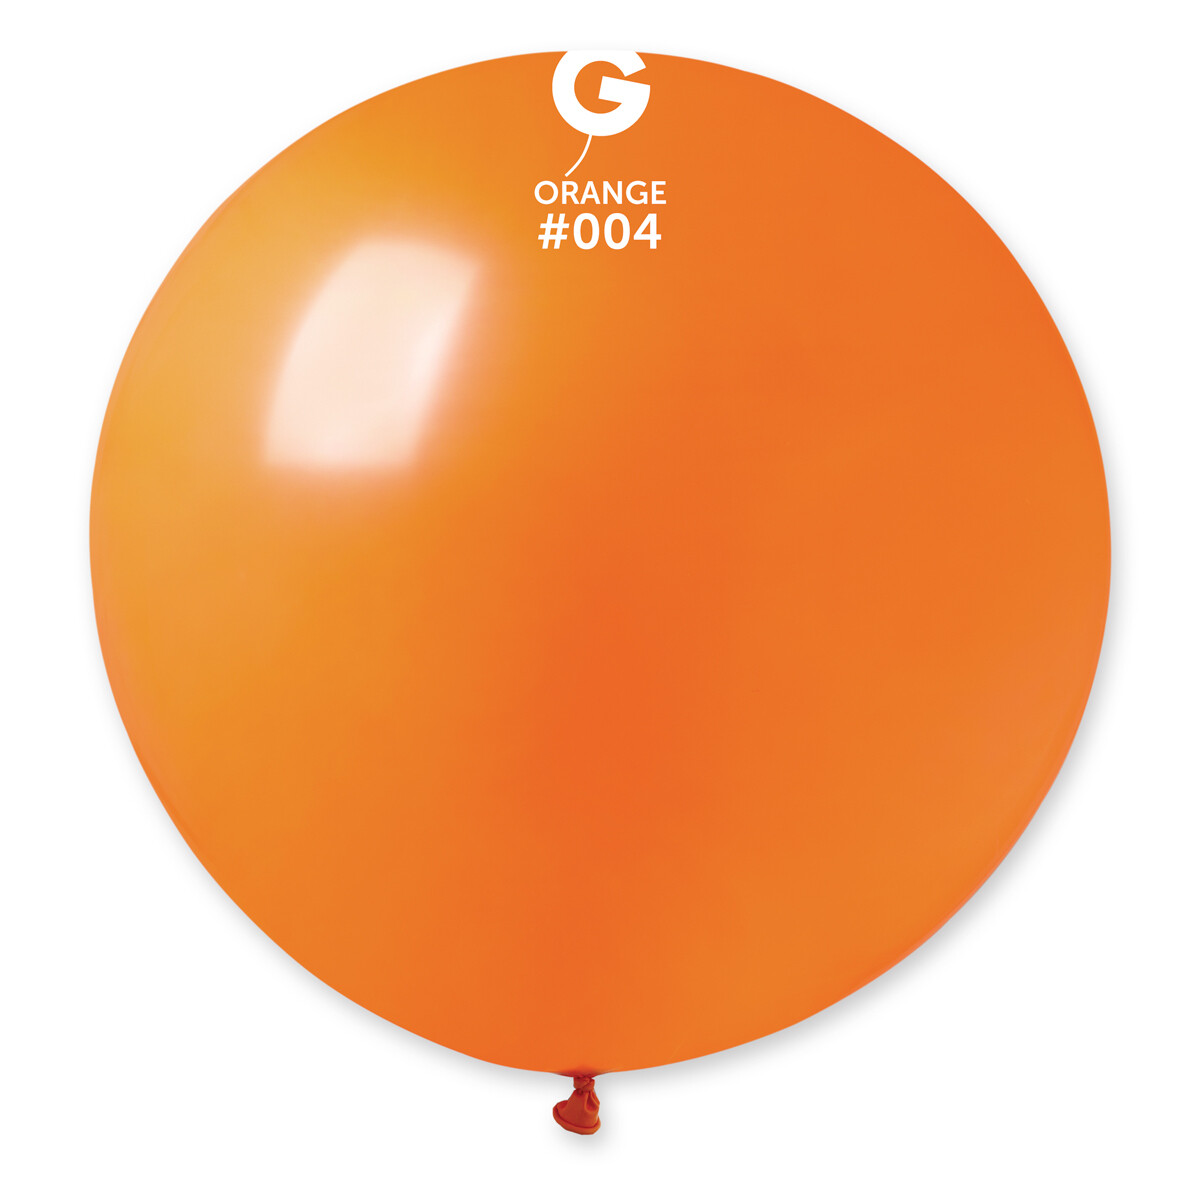 Standard Orange #004 31in - 1 piece